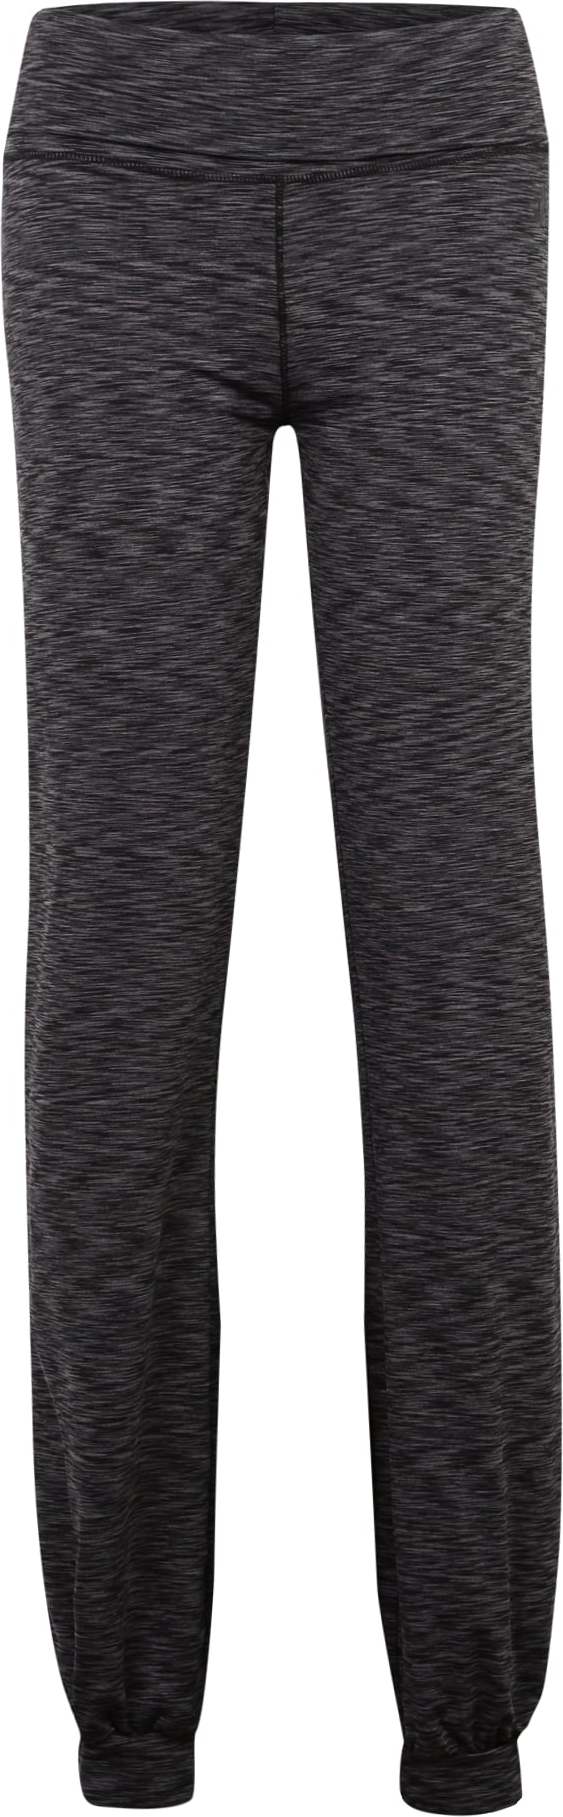 Sportovní kalhoty CURARE Yogawear šedá / černá